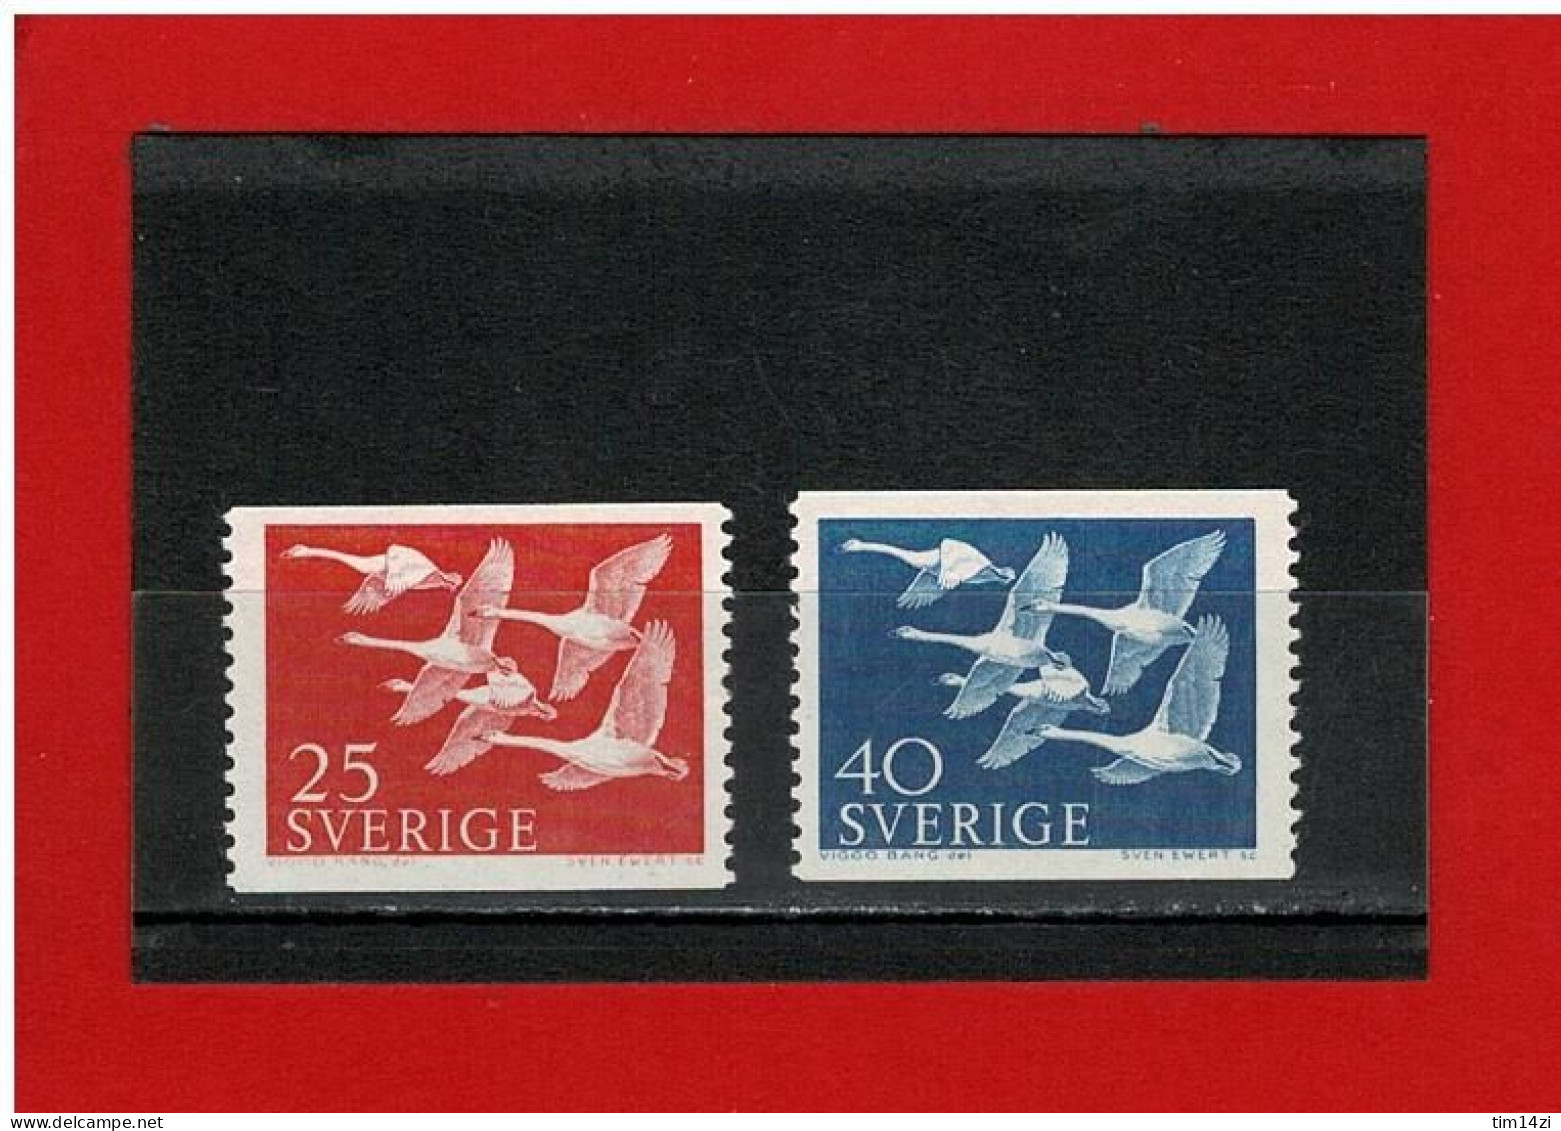 SUEDE - 1956 - N° 409/410 -  NEUFS** - JOURNEE DES PAYS DU NORD - Y & T - COTE : 1.50 Euros - Unused Stamps